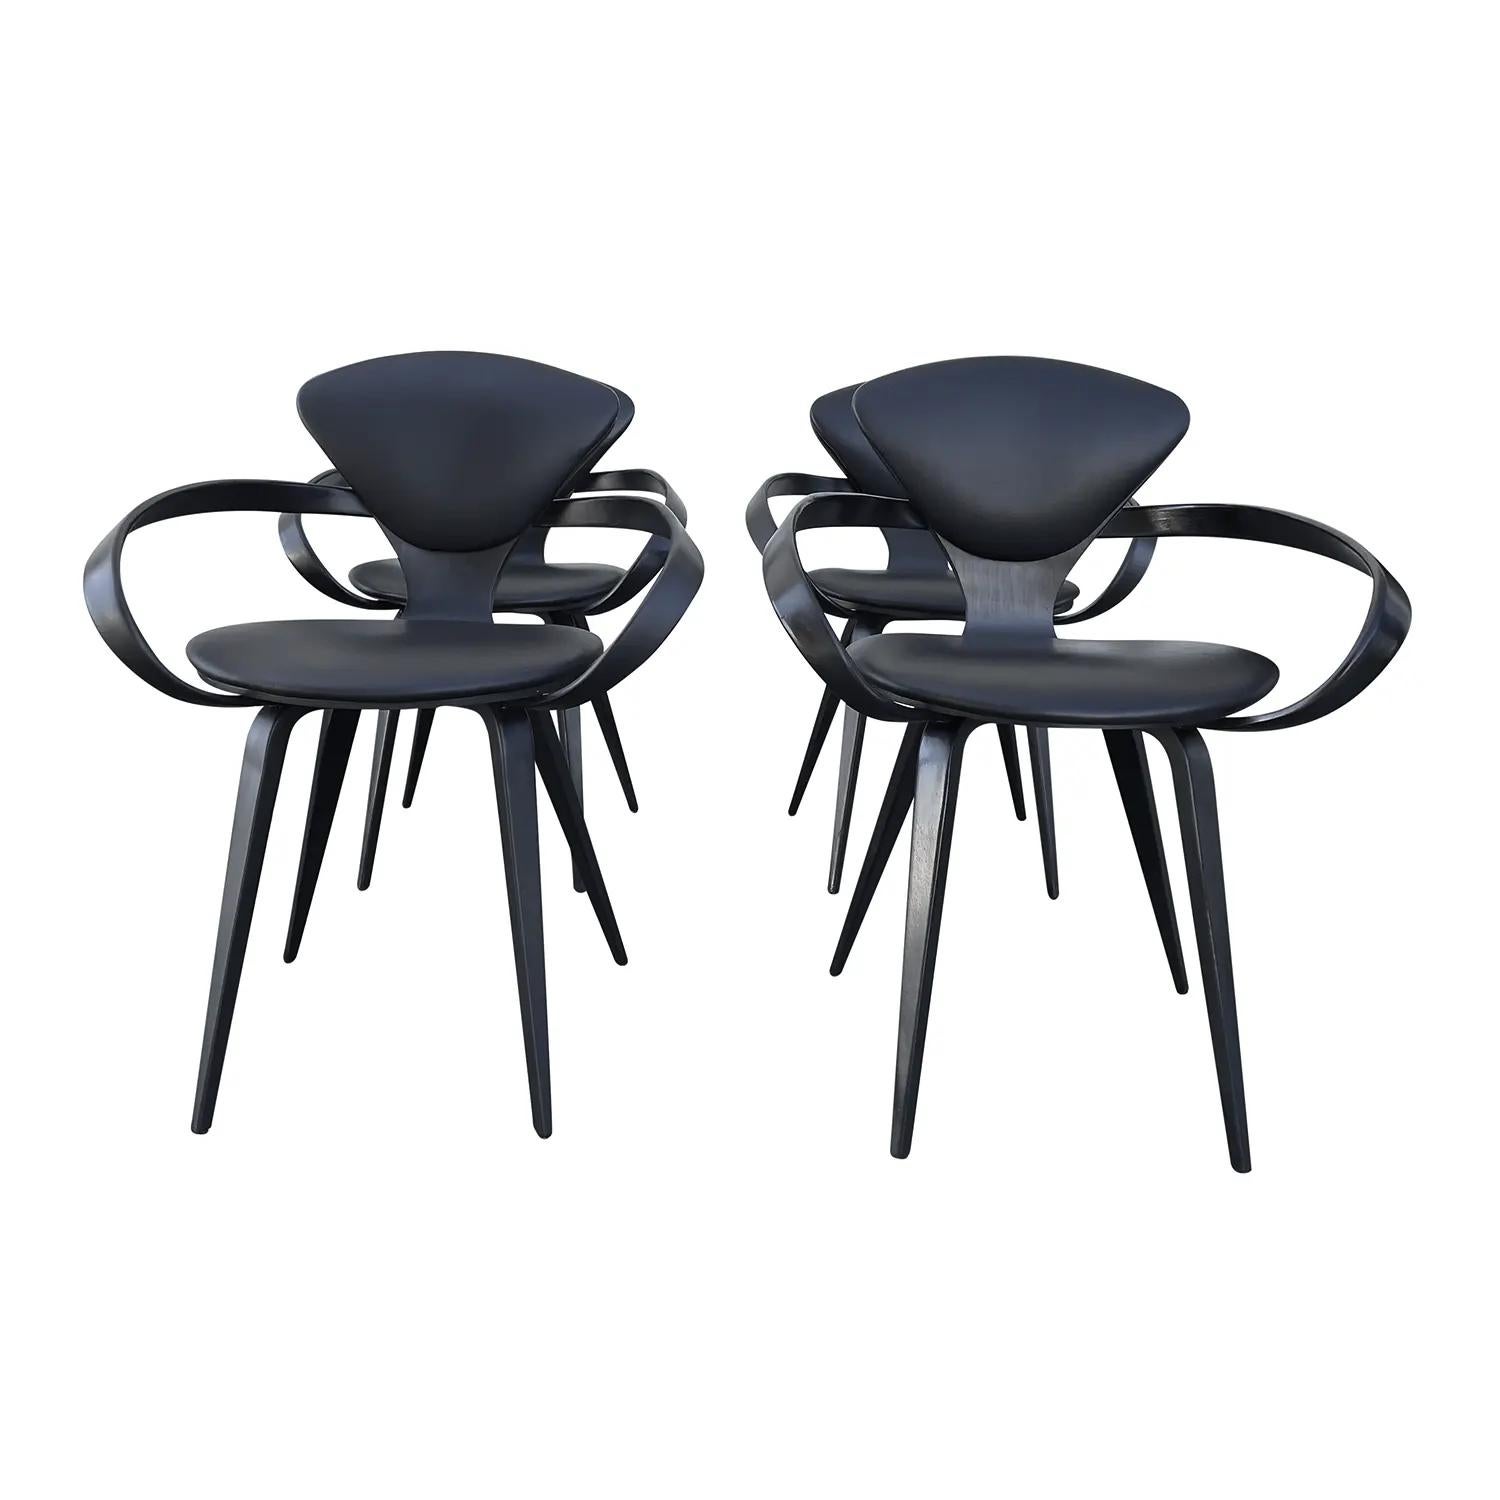 Ein schwarzer Satz von vier Pretzel-Esszimmerstühlen aus handgefertigtem Polyurethanschaum, entworfen von Norman Cherner und hergestellt von Plycraft, in gutem Zustand. Die Rückenlehne der Sessel und Beistellstühle ist leicht gewölbt, die Armlehnen